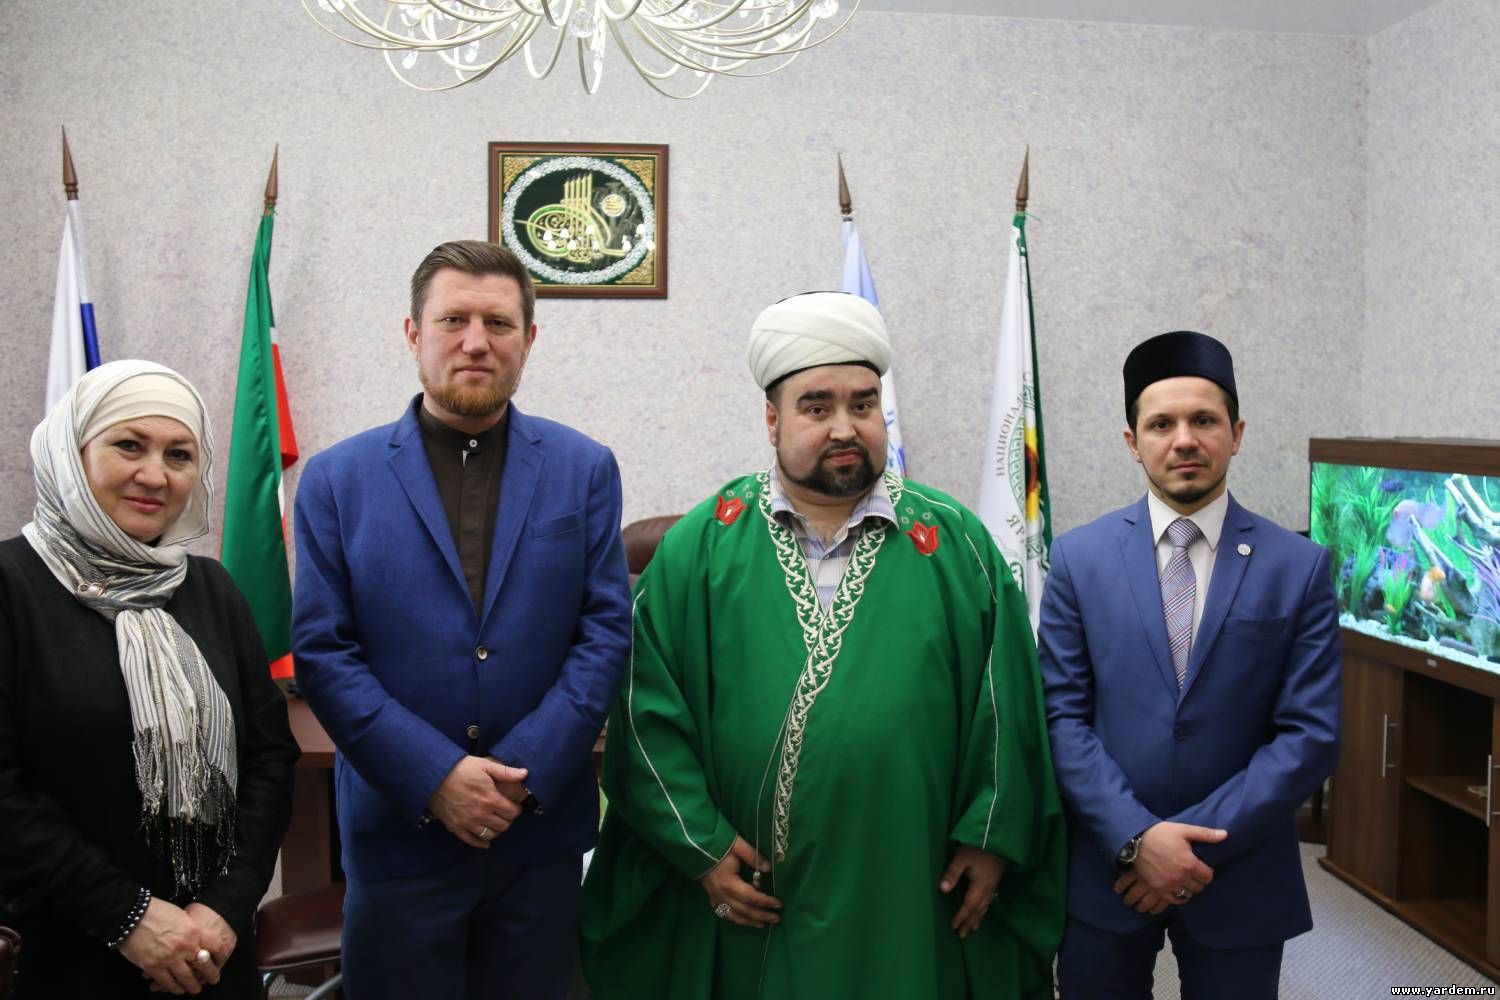 Фонду "Ярдэм" вручили благодарность из Самарской области. Общие новости